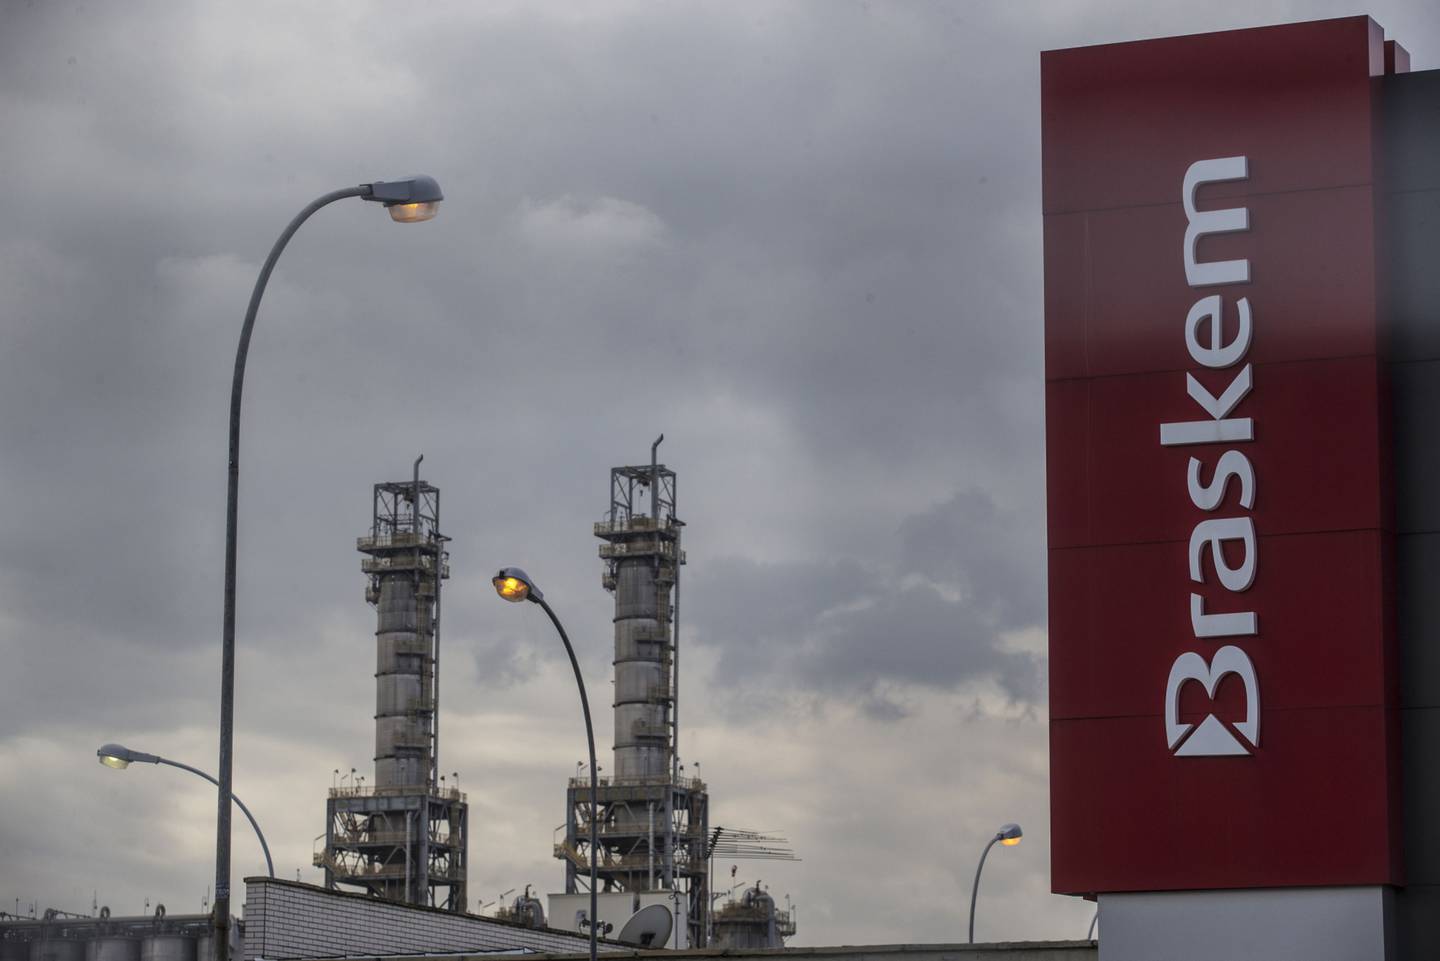 Grupo Novonor (ex-Odebrecht) quer vender o controle da Braskem, enquanto Petrobras contrata banco para venda de sua fatia